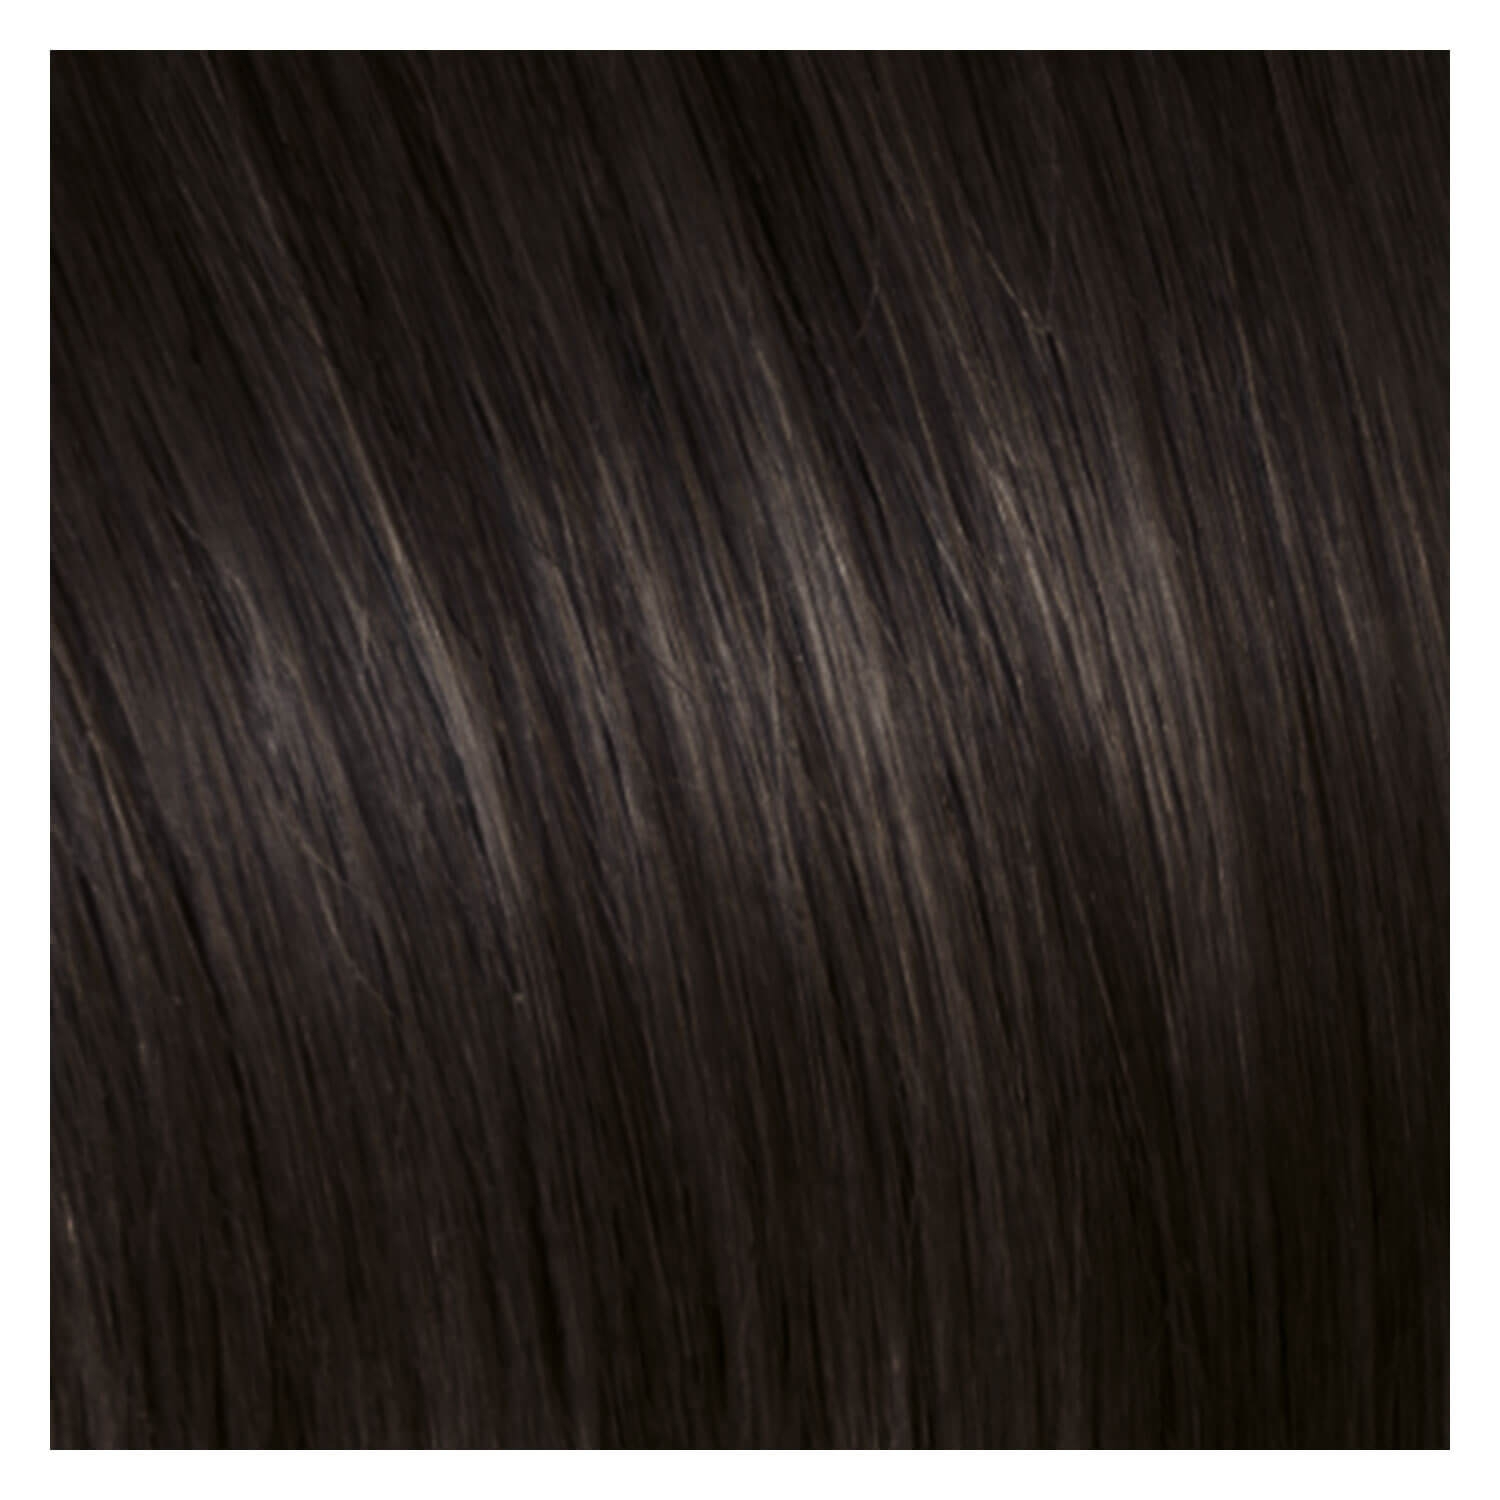 Produktbild von SHE Clip In-System Hair Extensions - 5-teiliges Set 4 Kastanienbraun 50/55cm